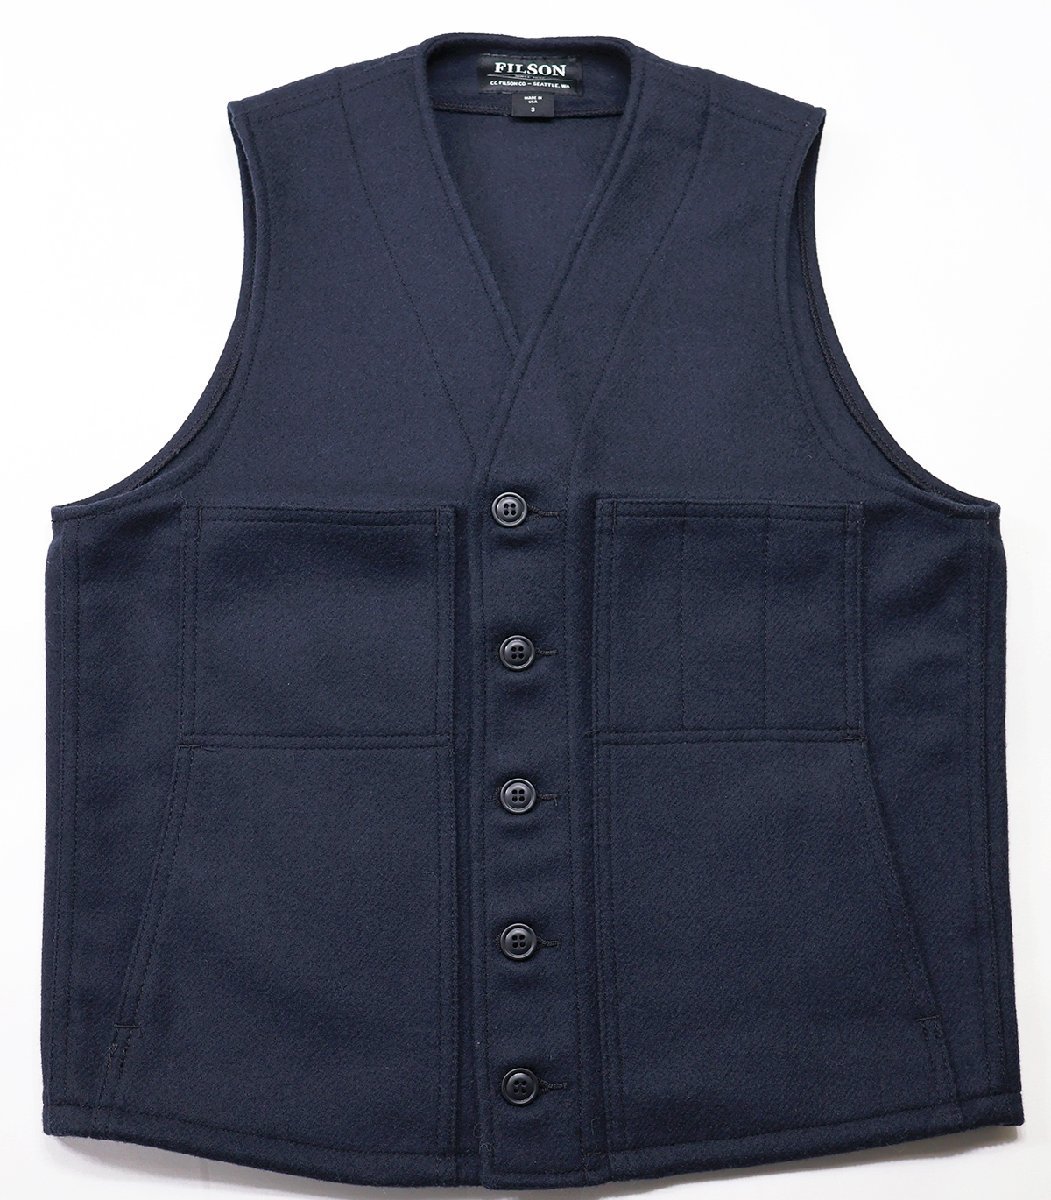 FILSON (フィルソン) Mackinaw Wool Vest / マッキーノ ウールベスト USA製 #11010055 美品 ネイビー size S